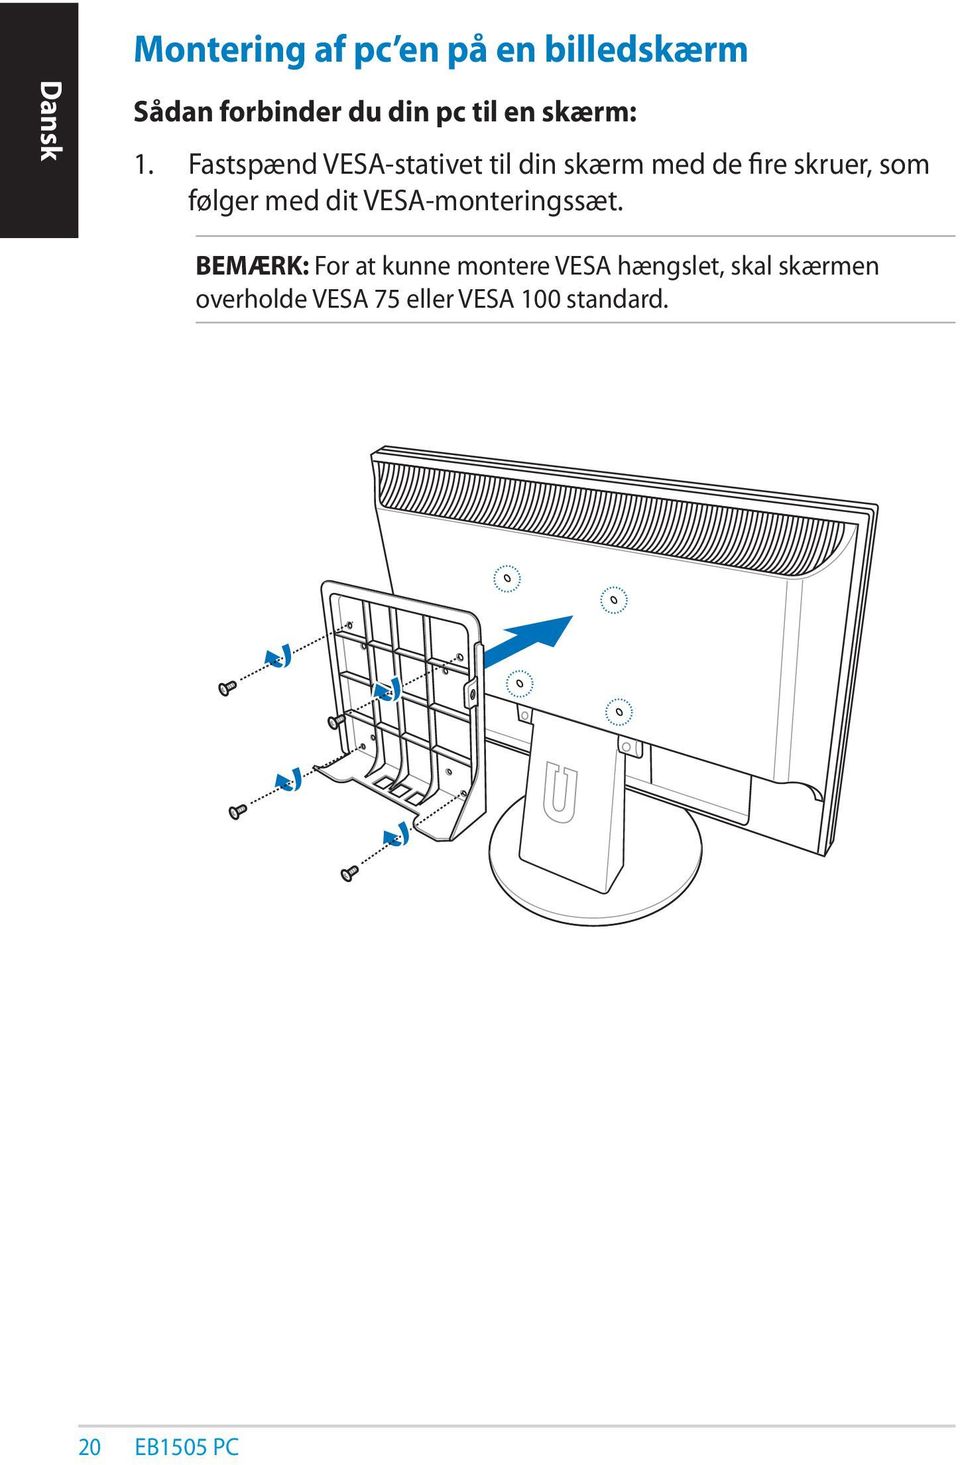 Fastspænd VESA-stativet til din skærm med de fire skruer, som følger med